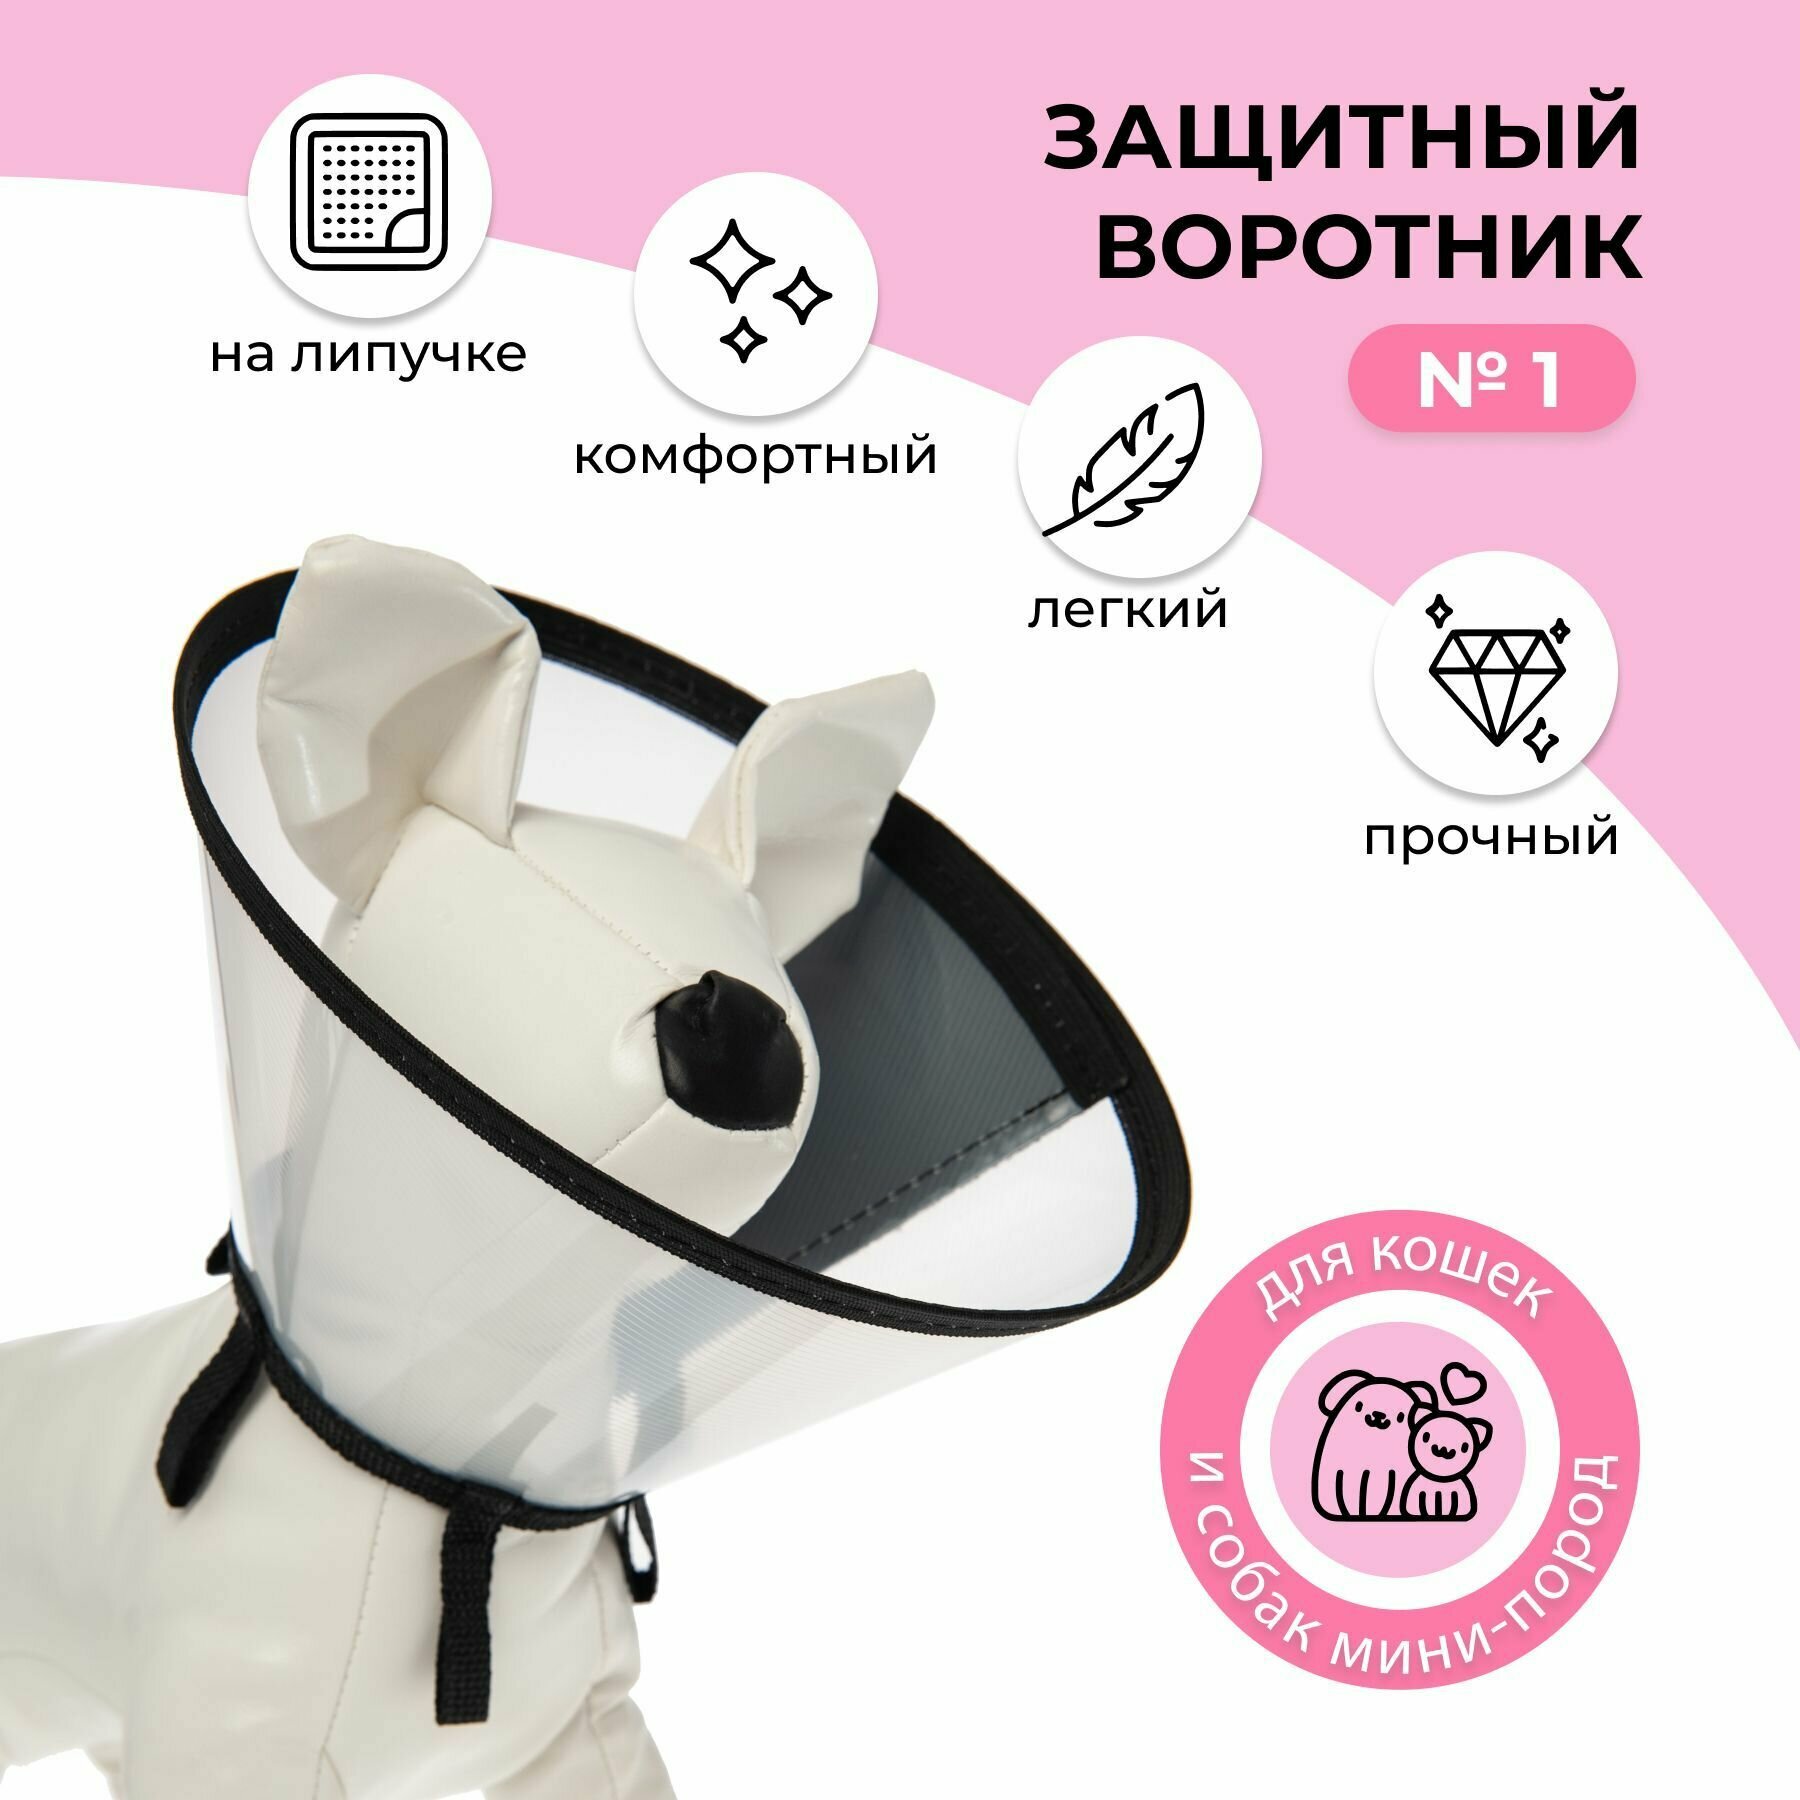 Воротник защитный ветеринарный пластиковый на липучке для животных кошек и собак №1, обхват шеи от 18,5 до 19 см, высота 7,5 см